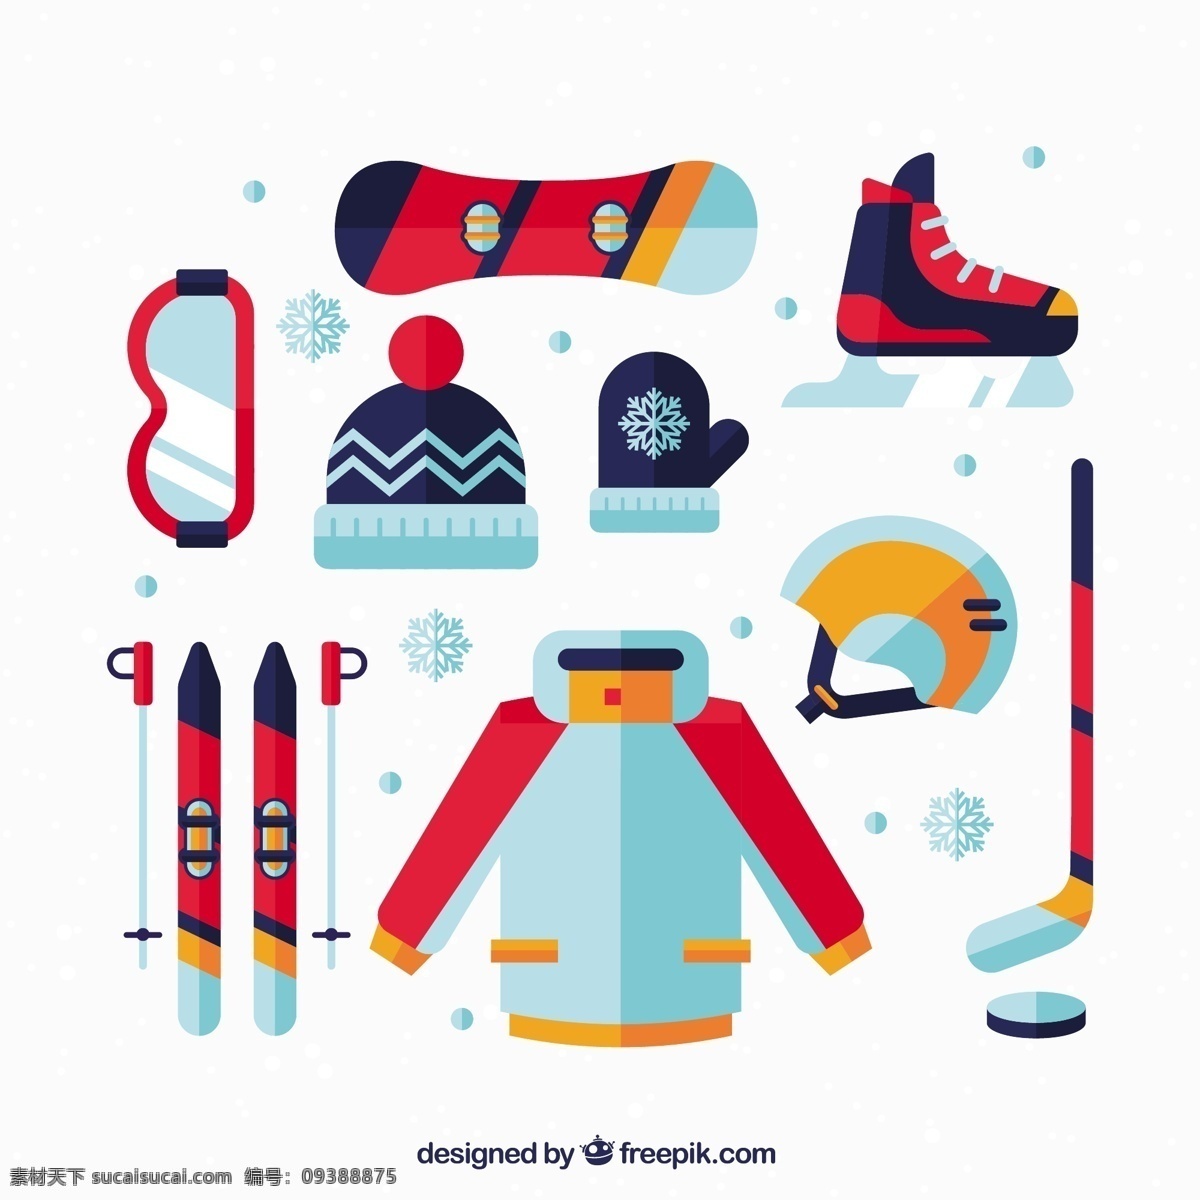 平面设计 中 冬季 运动 设备 健身 眼镜 平板 帽子 滑雪 曲棍球 训练 感冒 外套 生活方式 锻炼 季节 手套